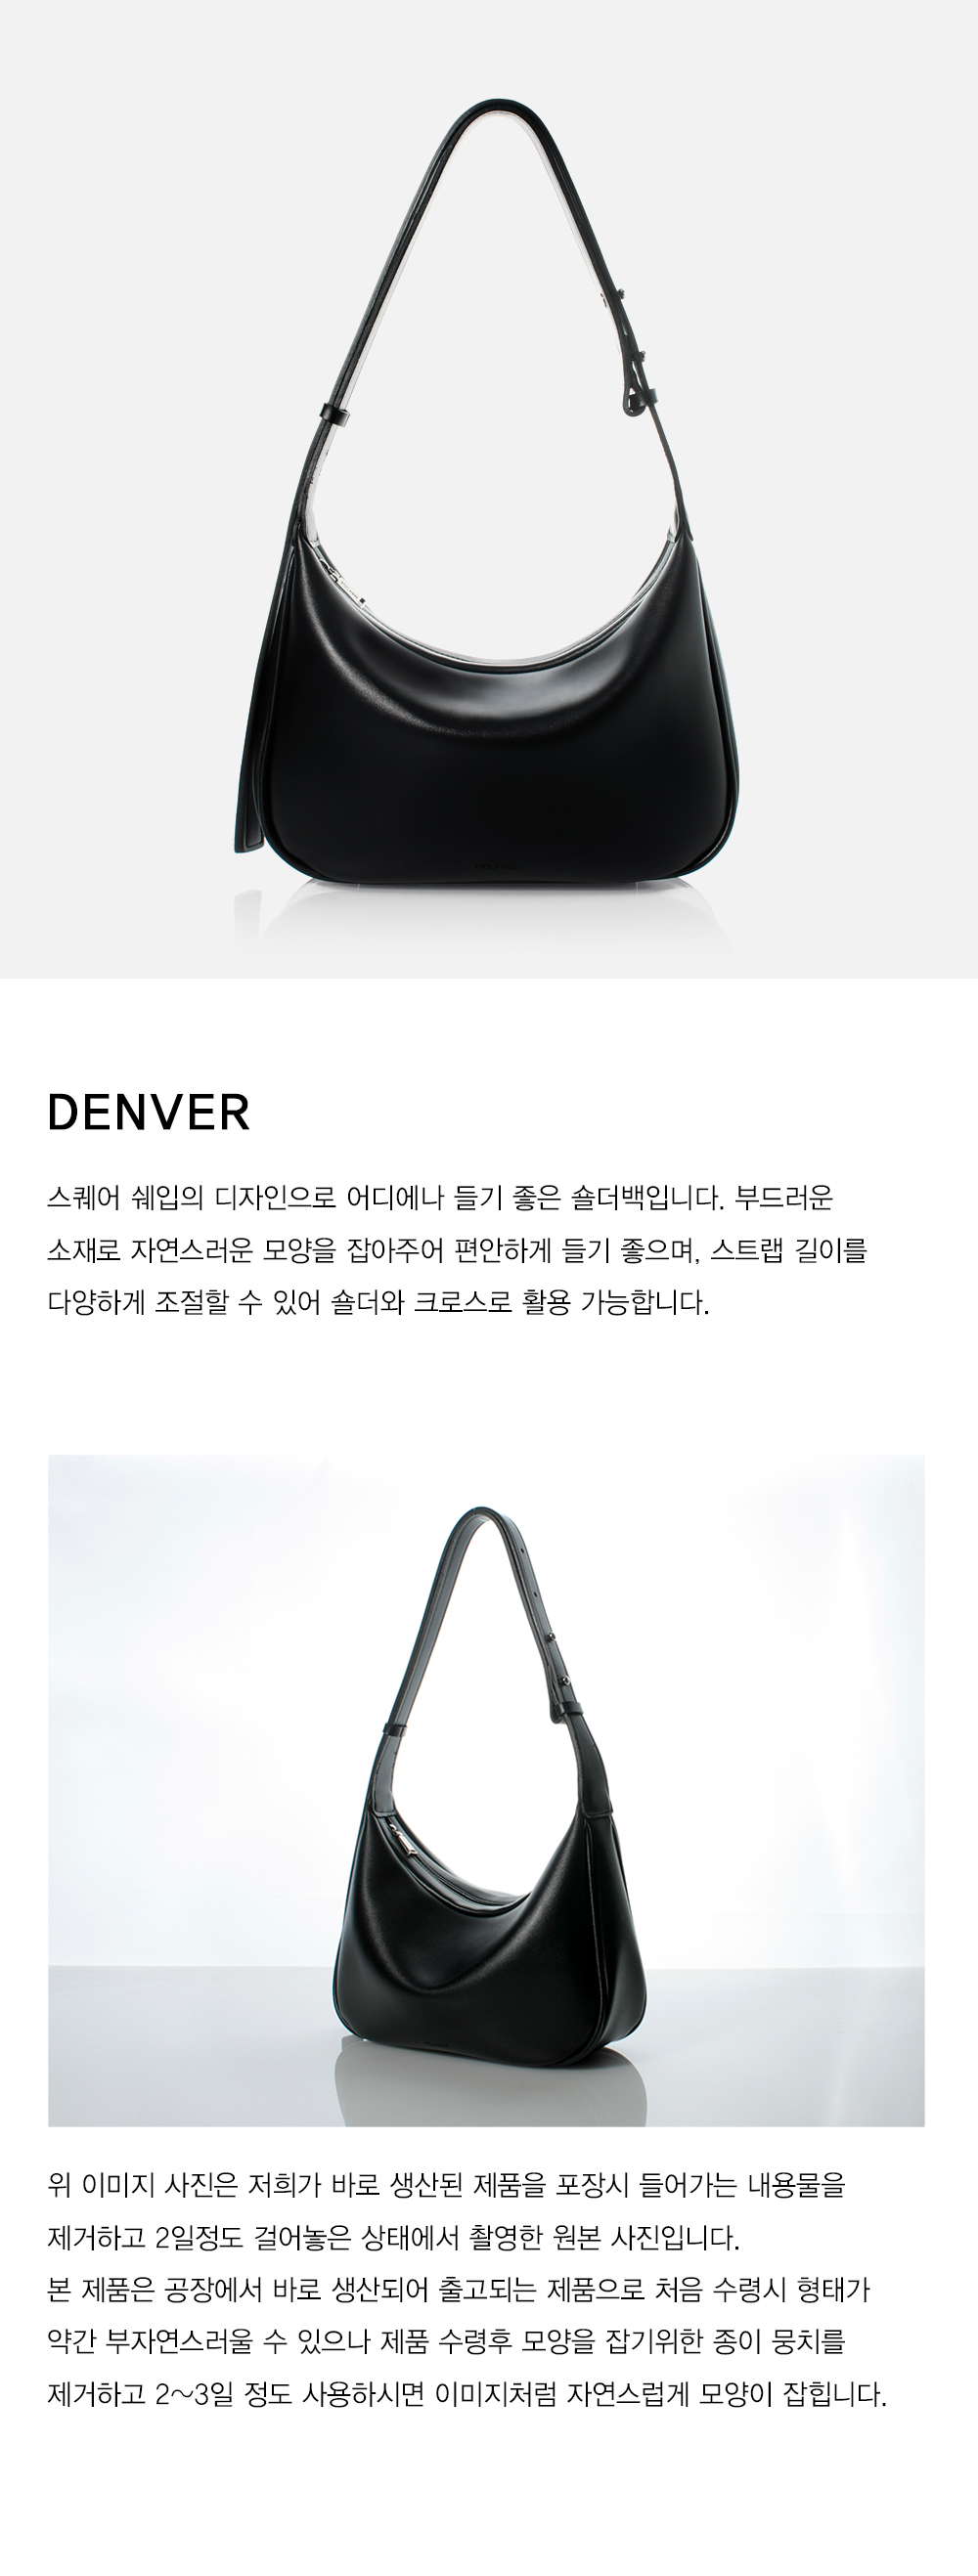 [MCLANEE] Denver shoulder and cross bag - Black